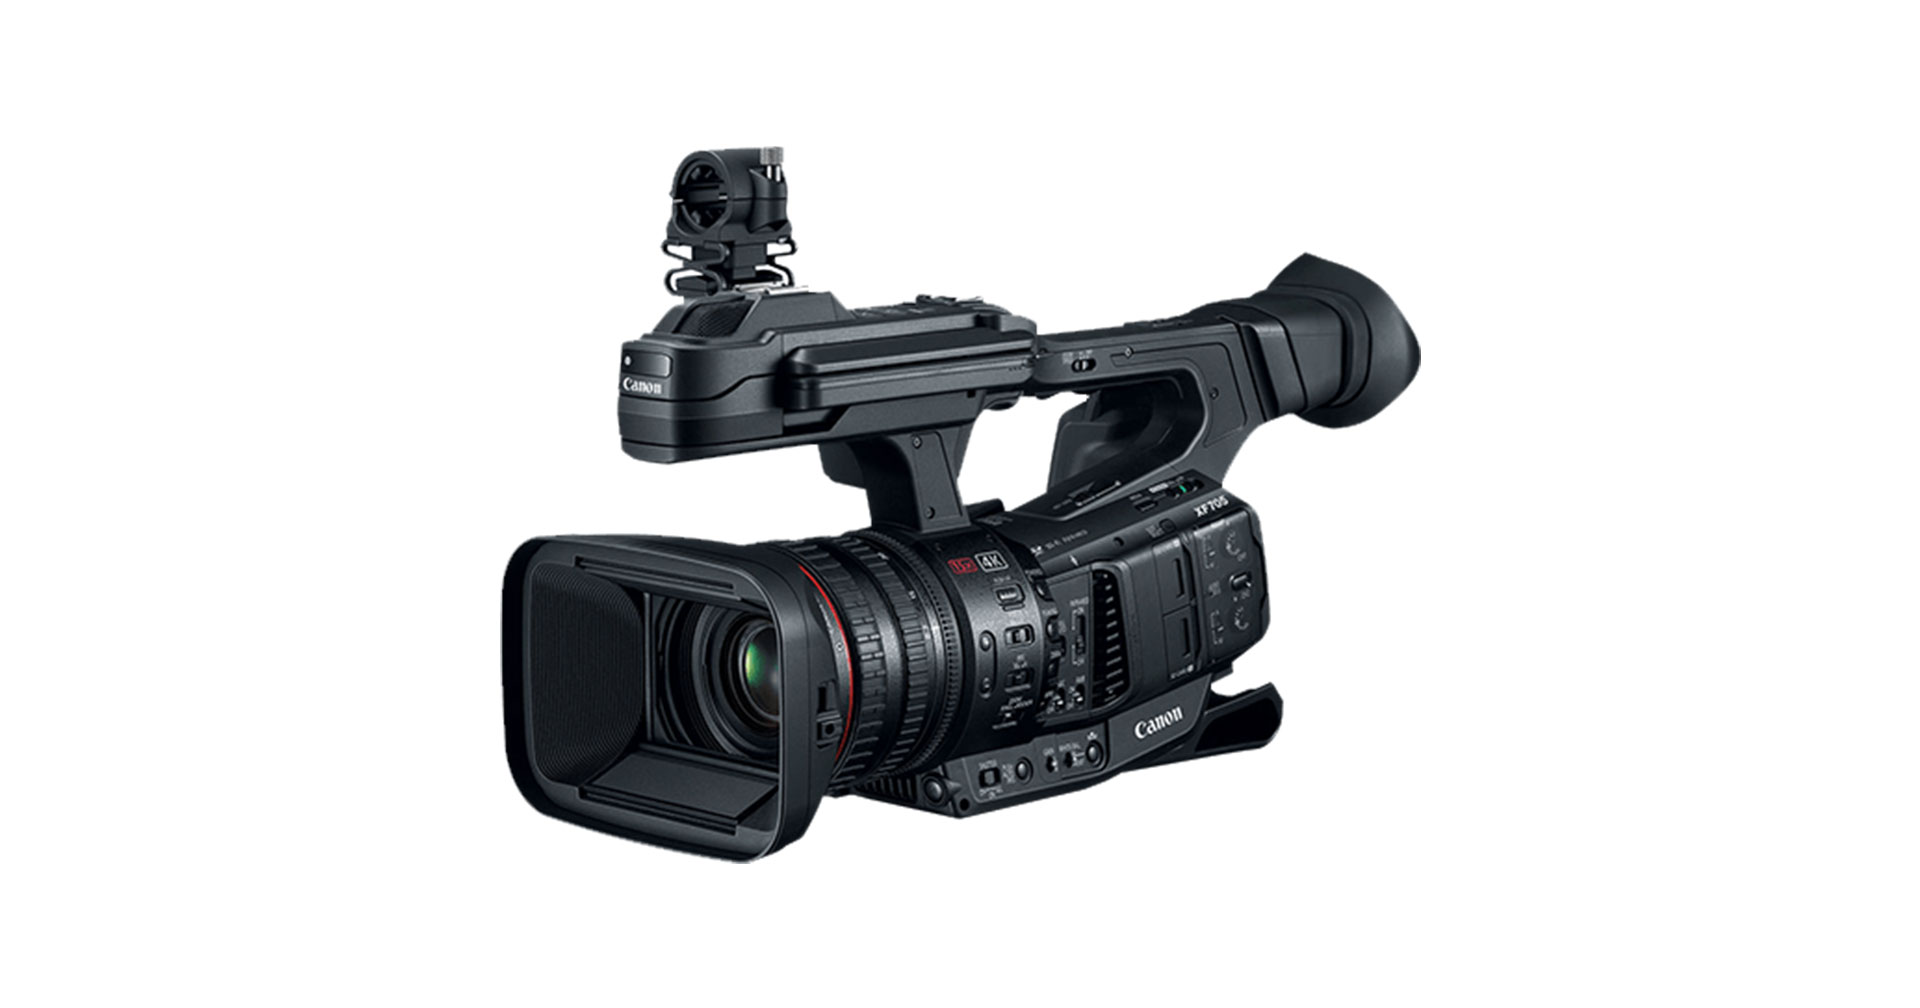 Canon เตรียมเปิดตัวกล้องวิดีโอ 4K ระดับโปรรุ่นใหม่ สิ้นเดือน ส.ค. นี้!